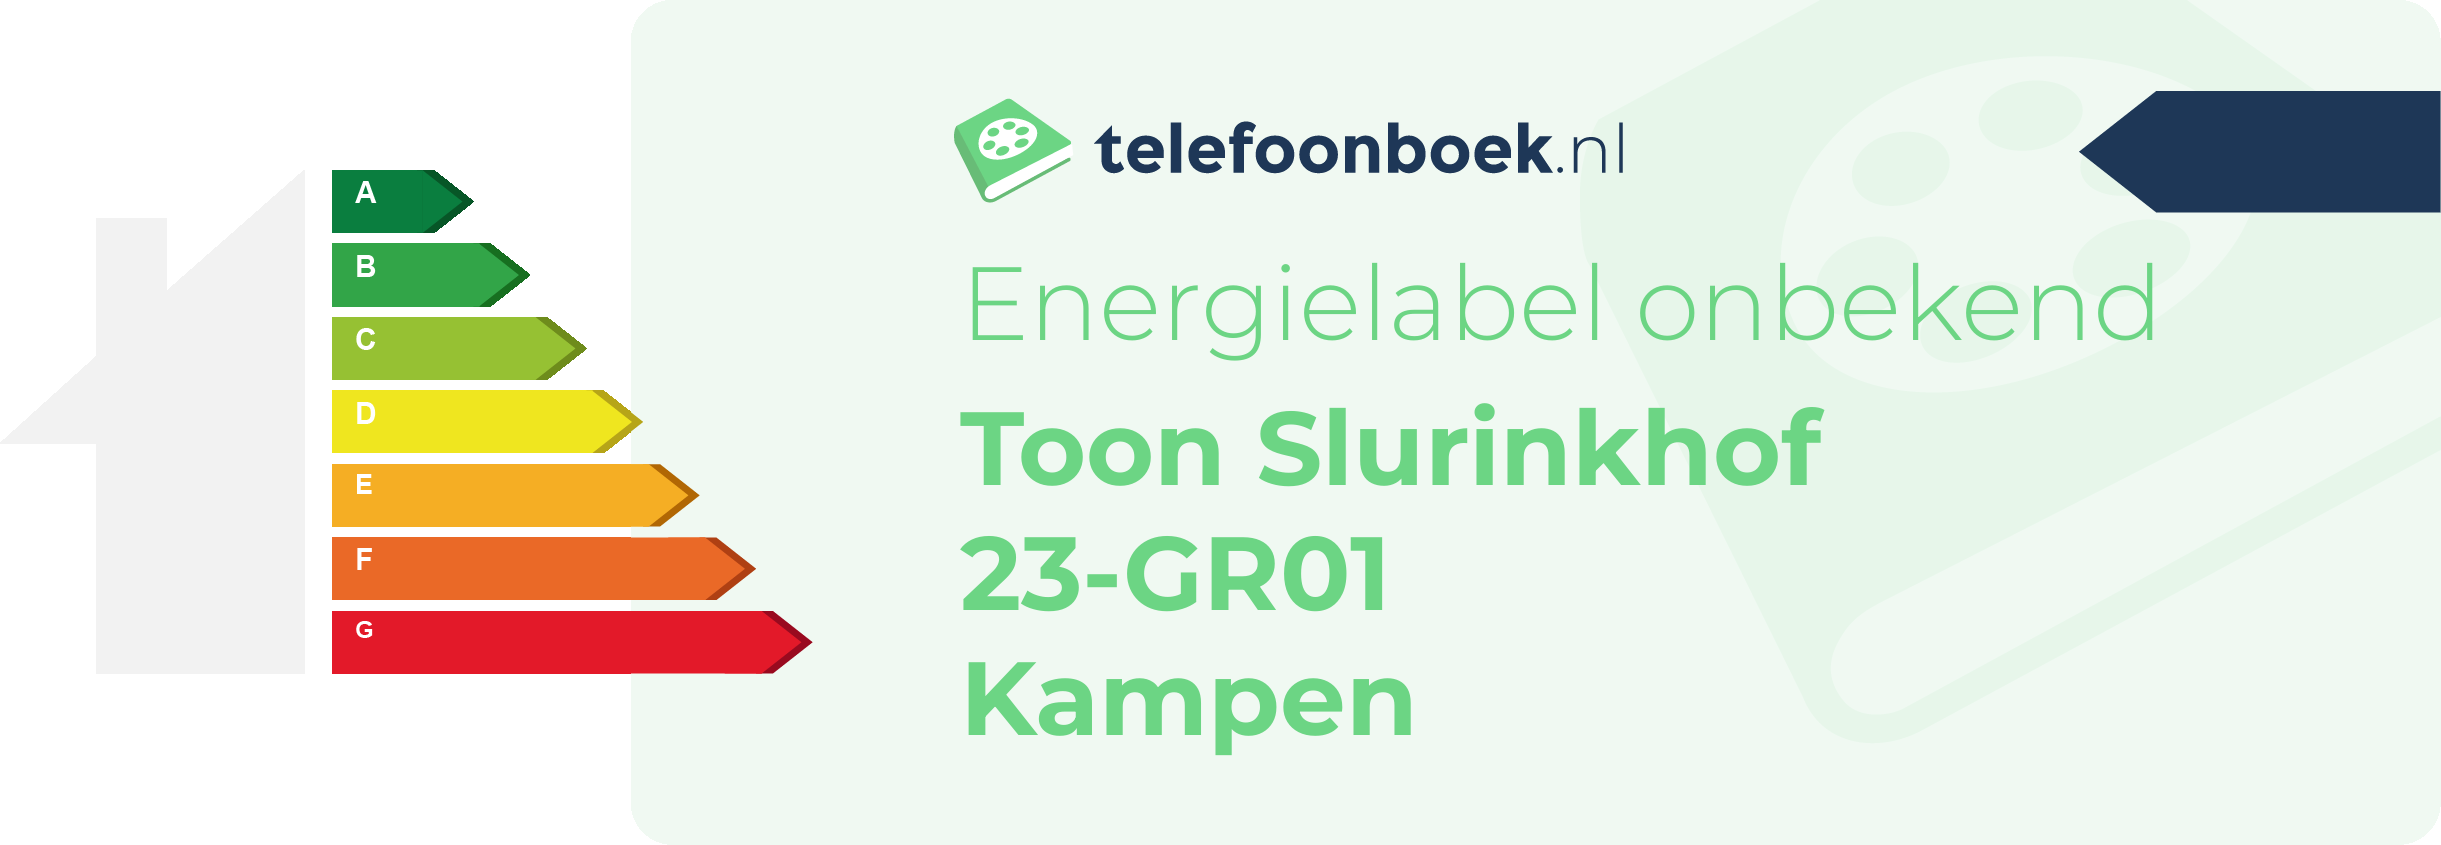 Energielabel Toon Slurinkhof 23-GR01 Kampen